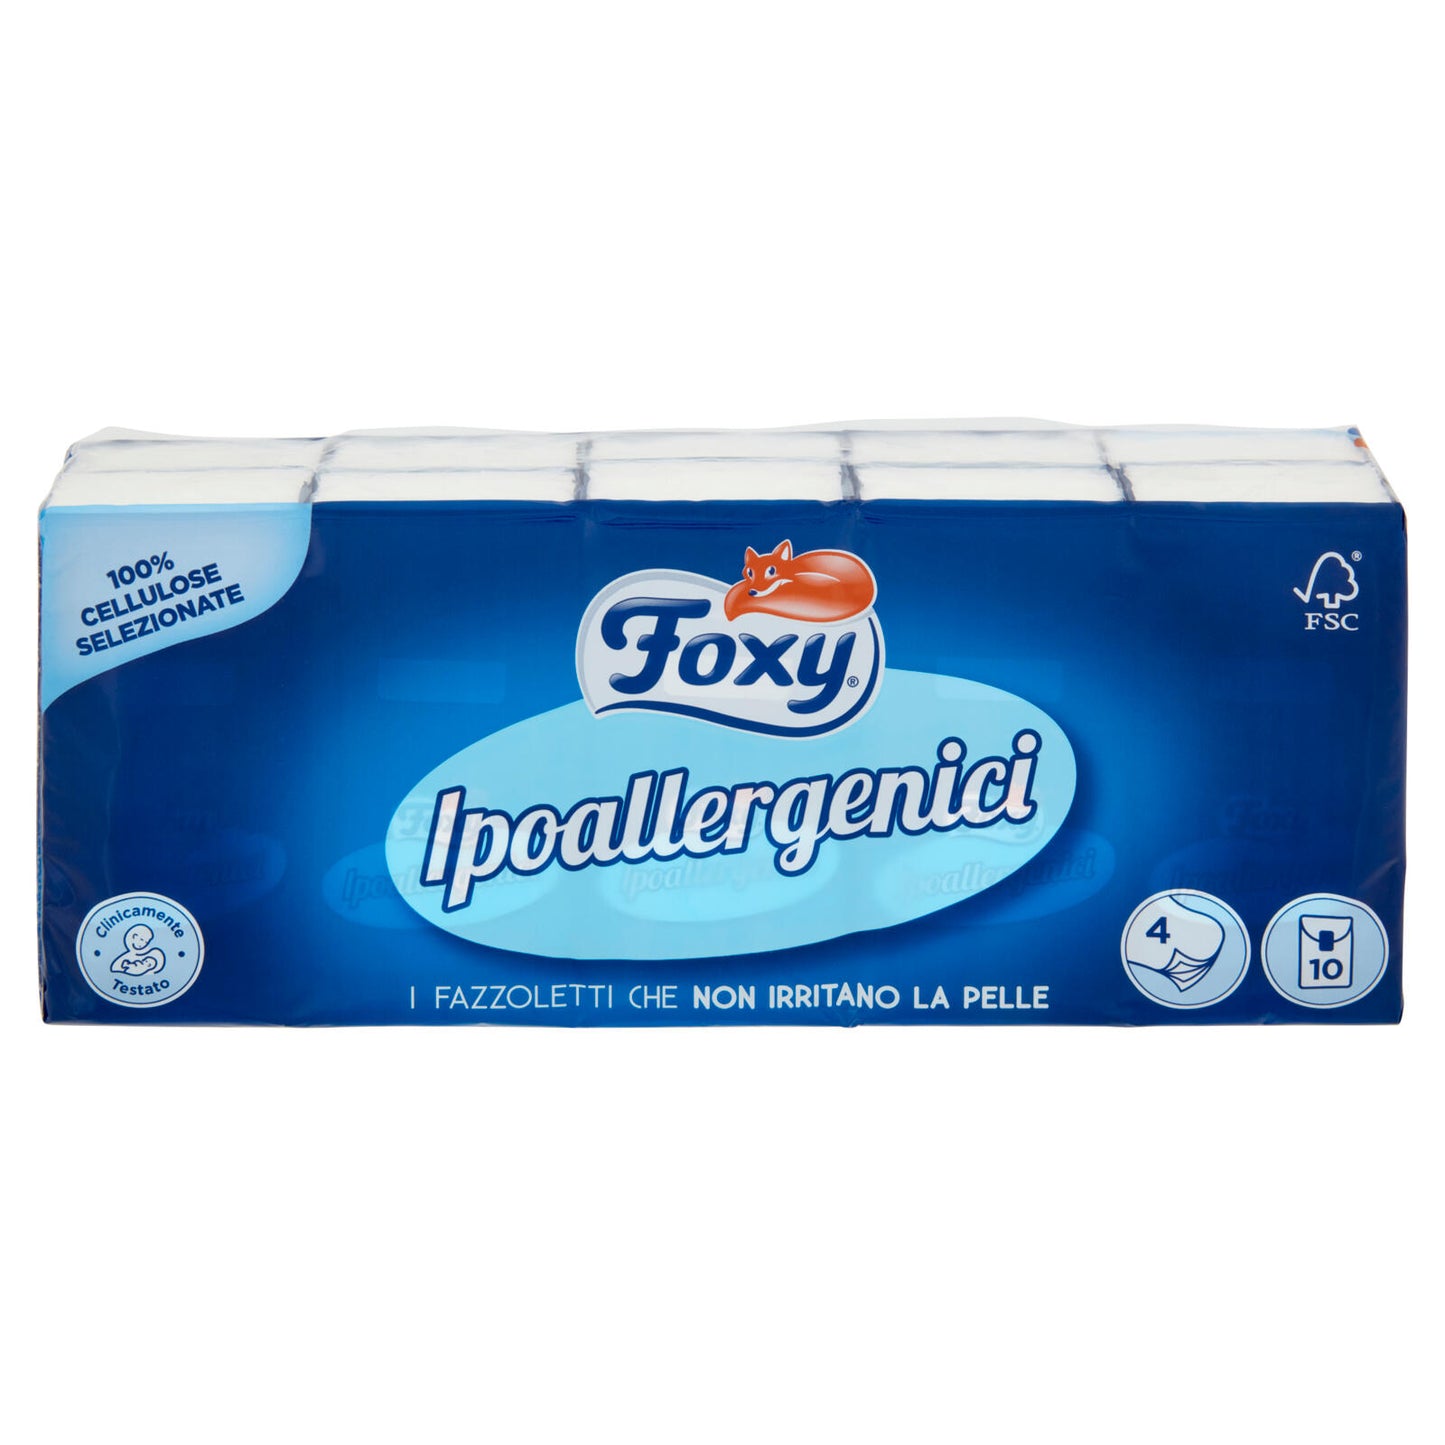 Foxy Ipoallergenici Fazzoletti 10 pz